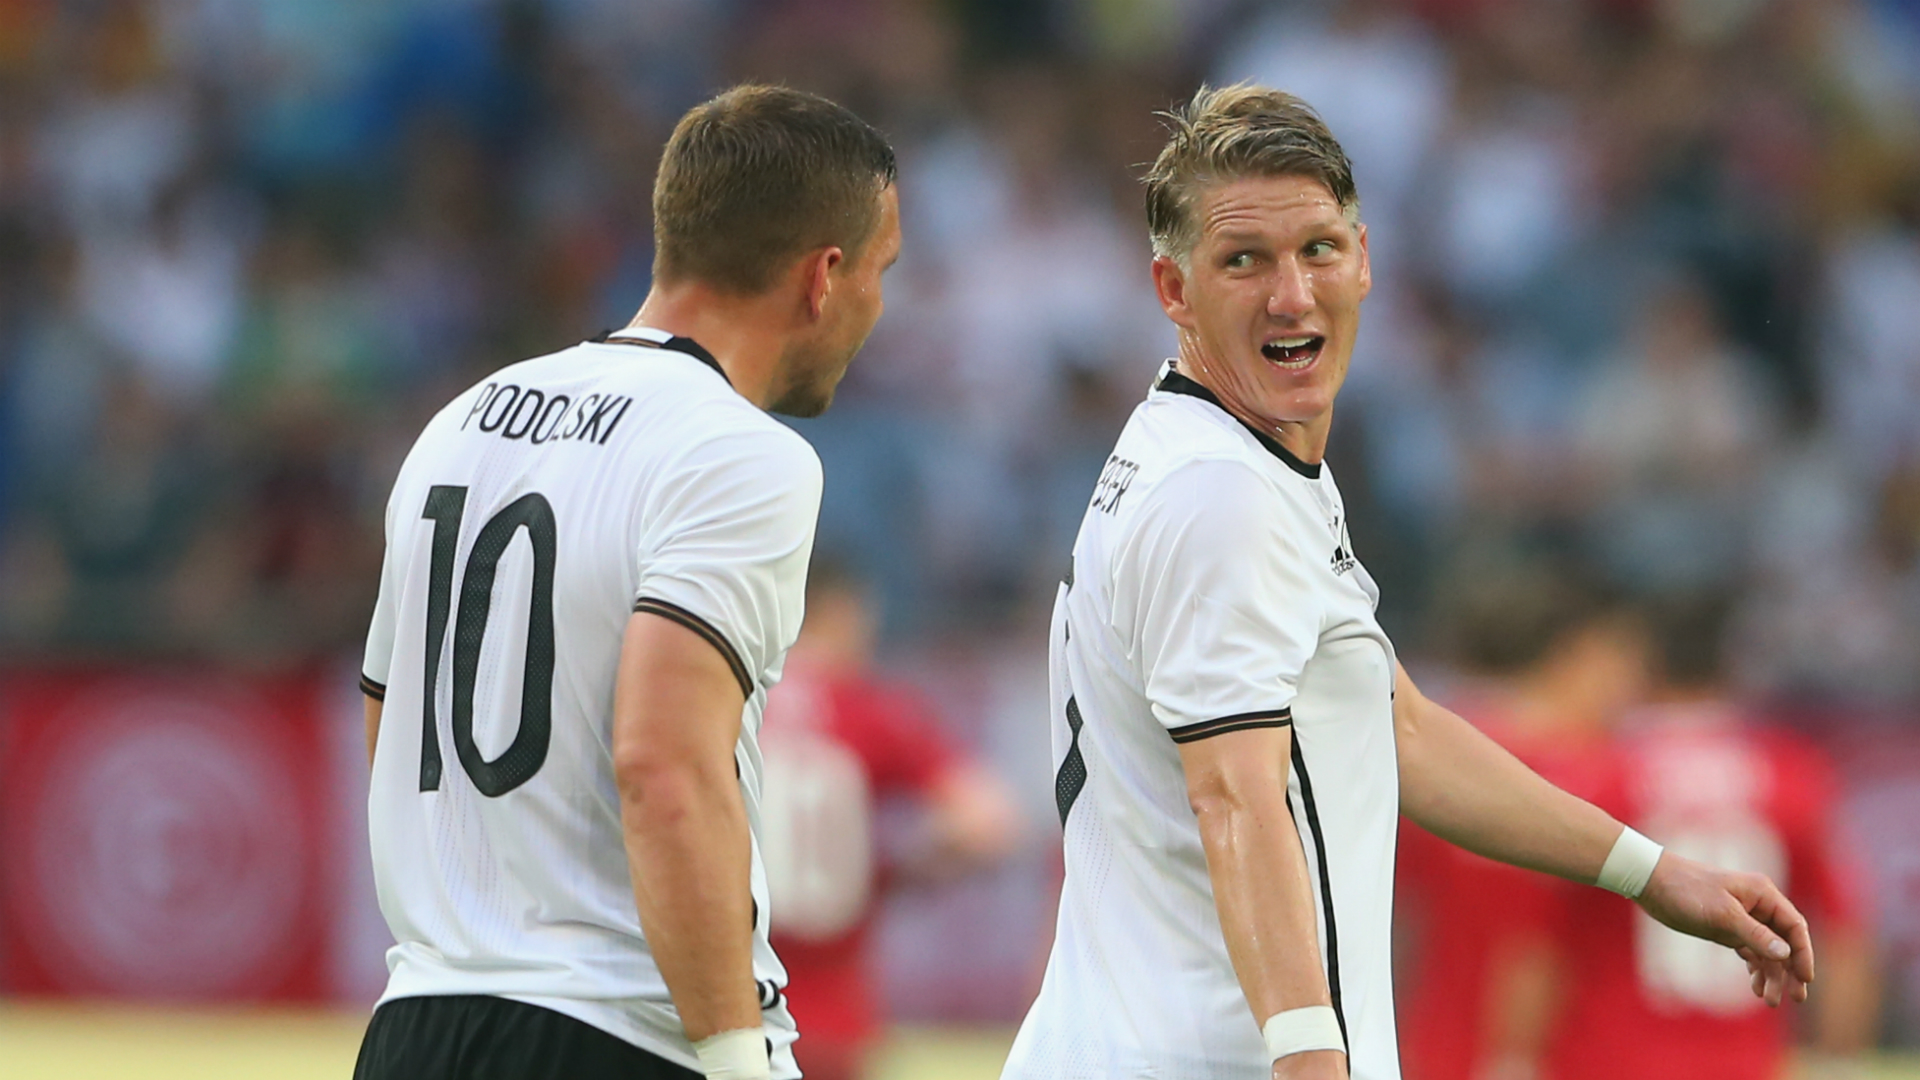 Lothar Matthaus Advises Bastian Schweinsteiger, Lucas Podolski to Retire From Germany